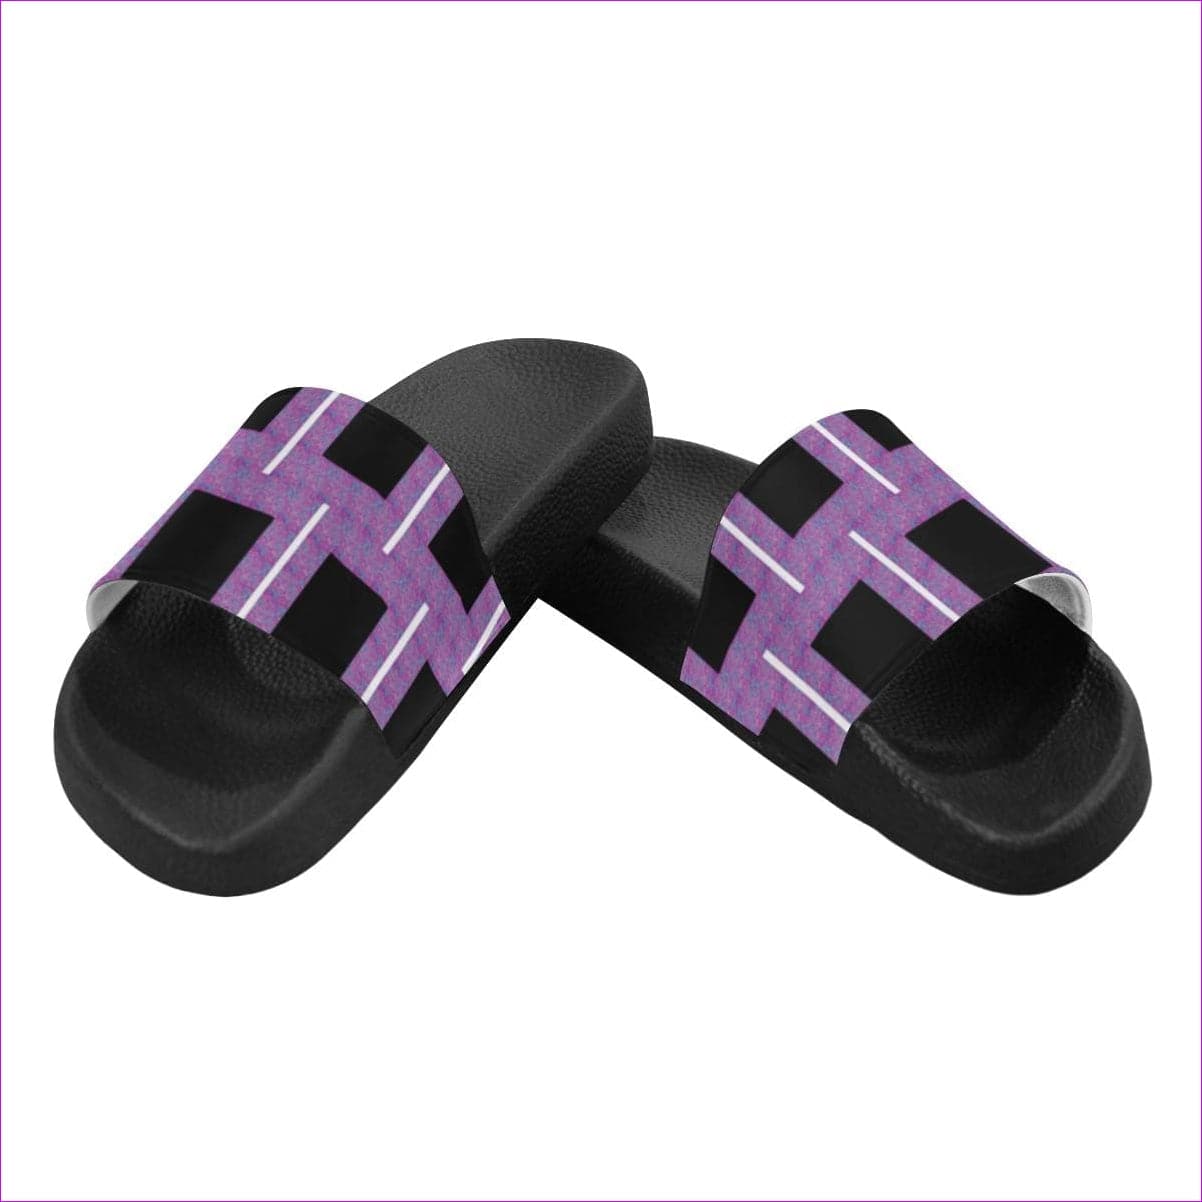 Royal Geo 2 Women's Slide Sandals - women's shoe at TFC&H Co.